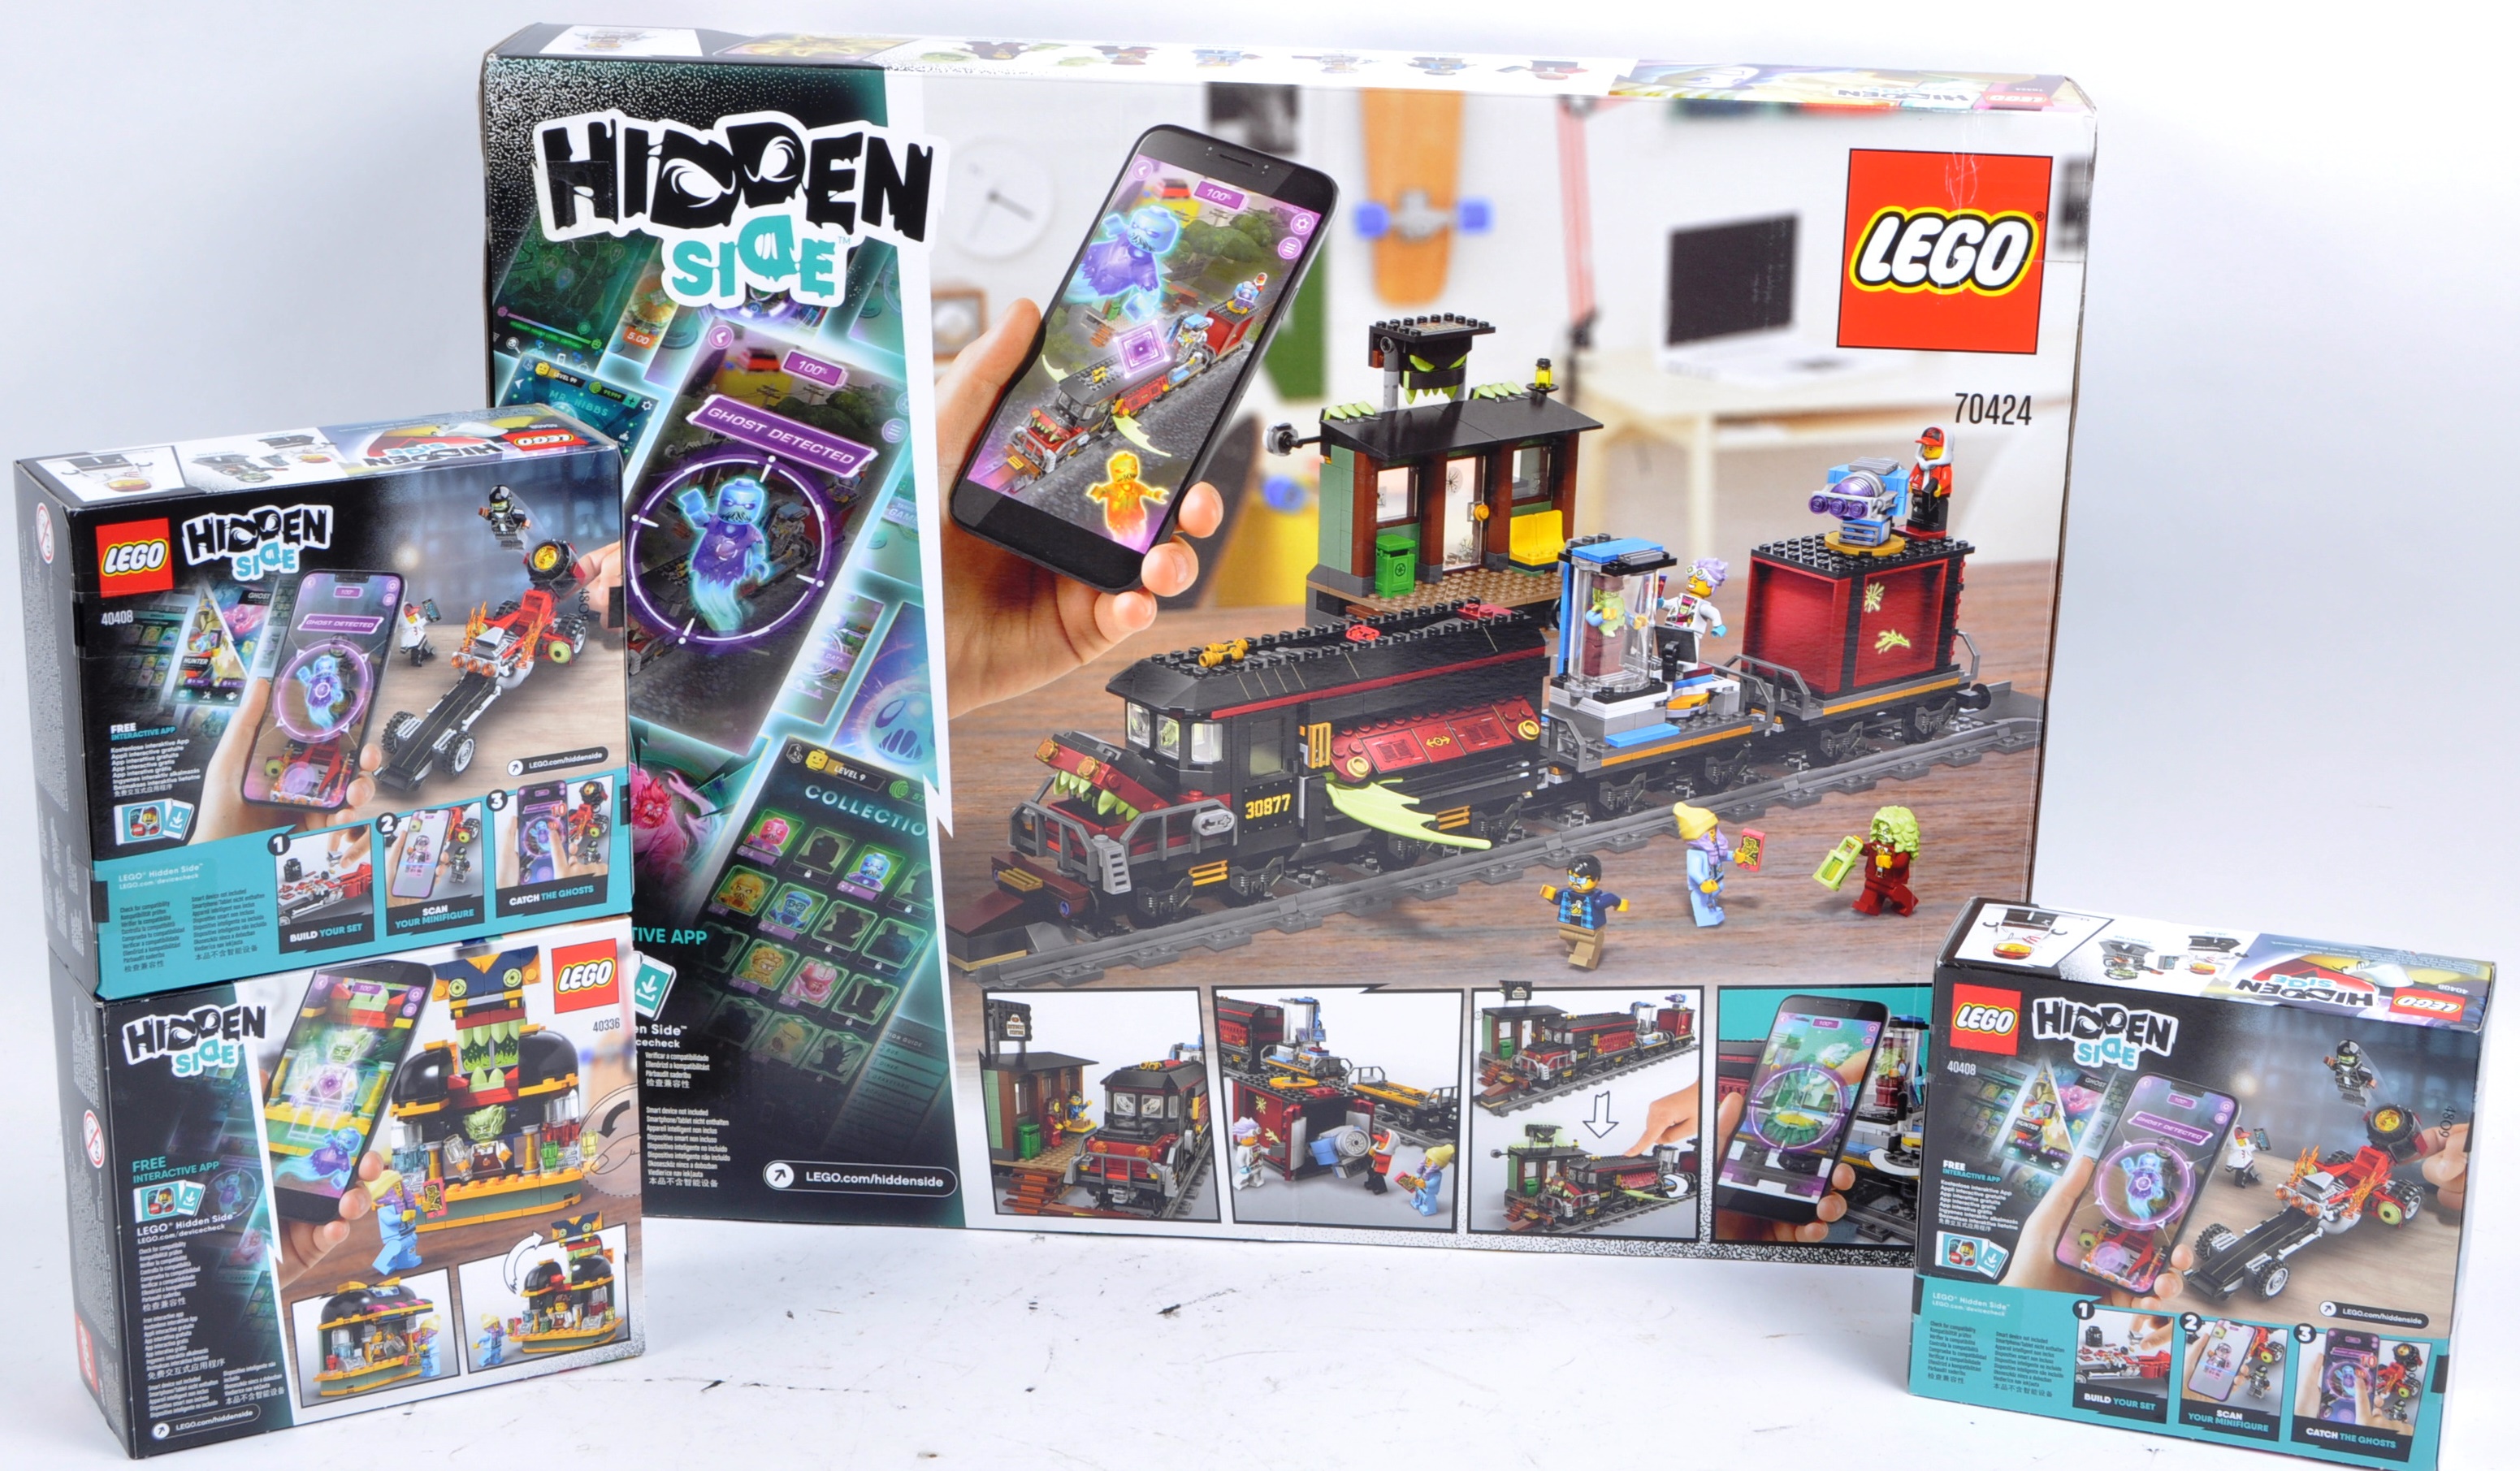 LEGO SETS - LEGO HIDDEN SIDE - Image 5 of 6